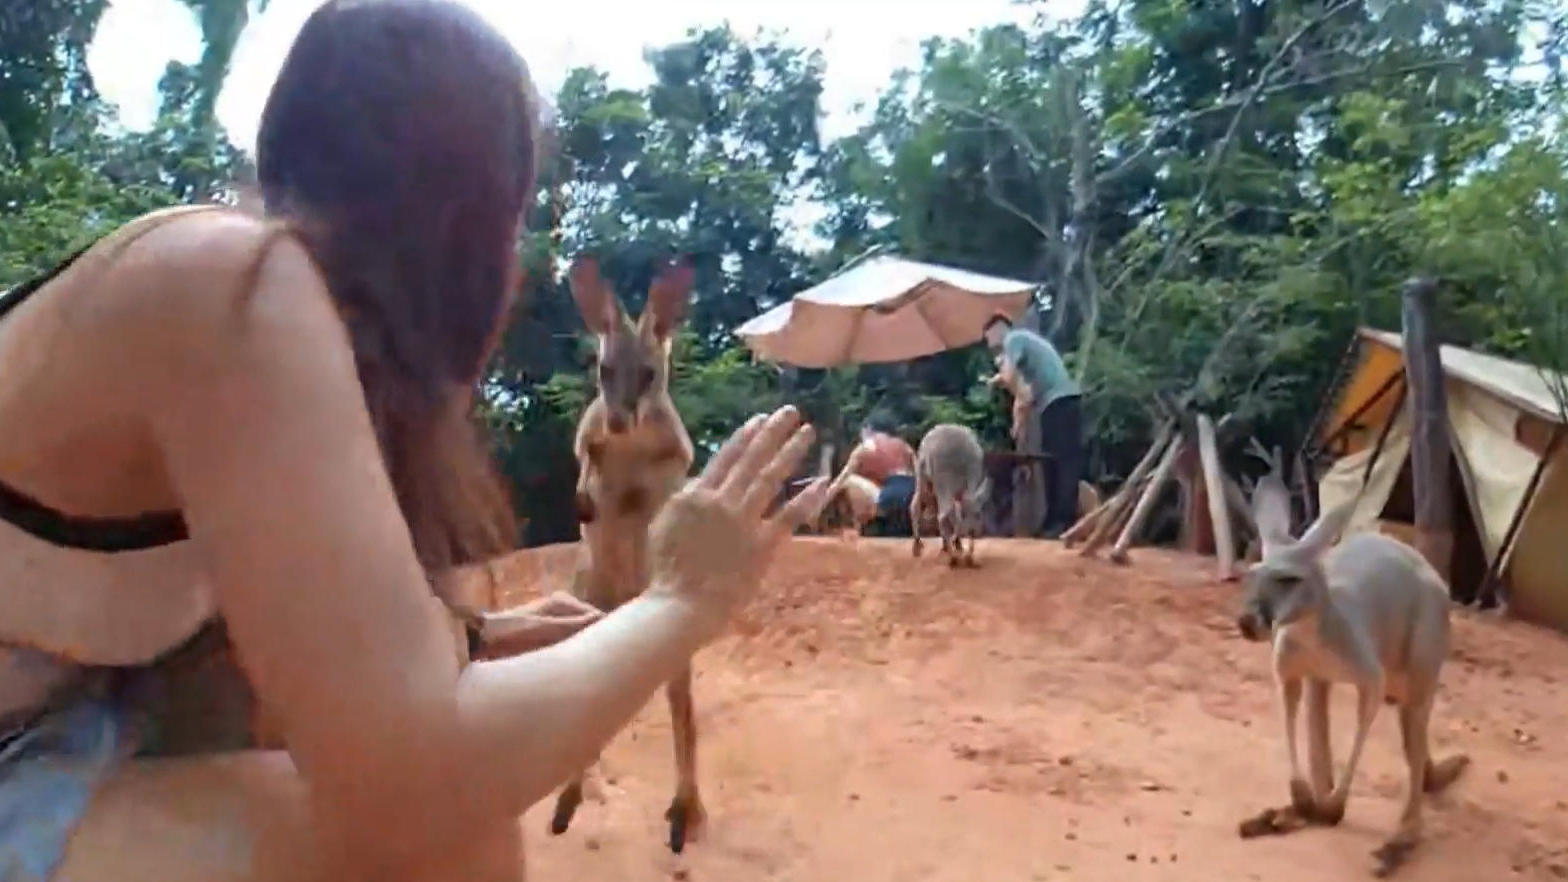 Du filmst hier nicht! Känguru boxt live Streamerin um Plötzlich fliegen die Fäuste